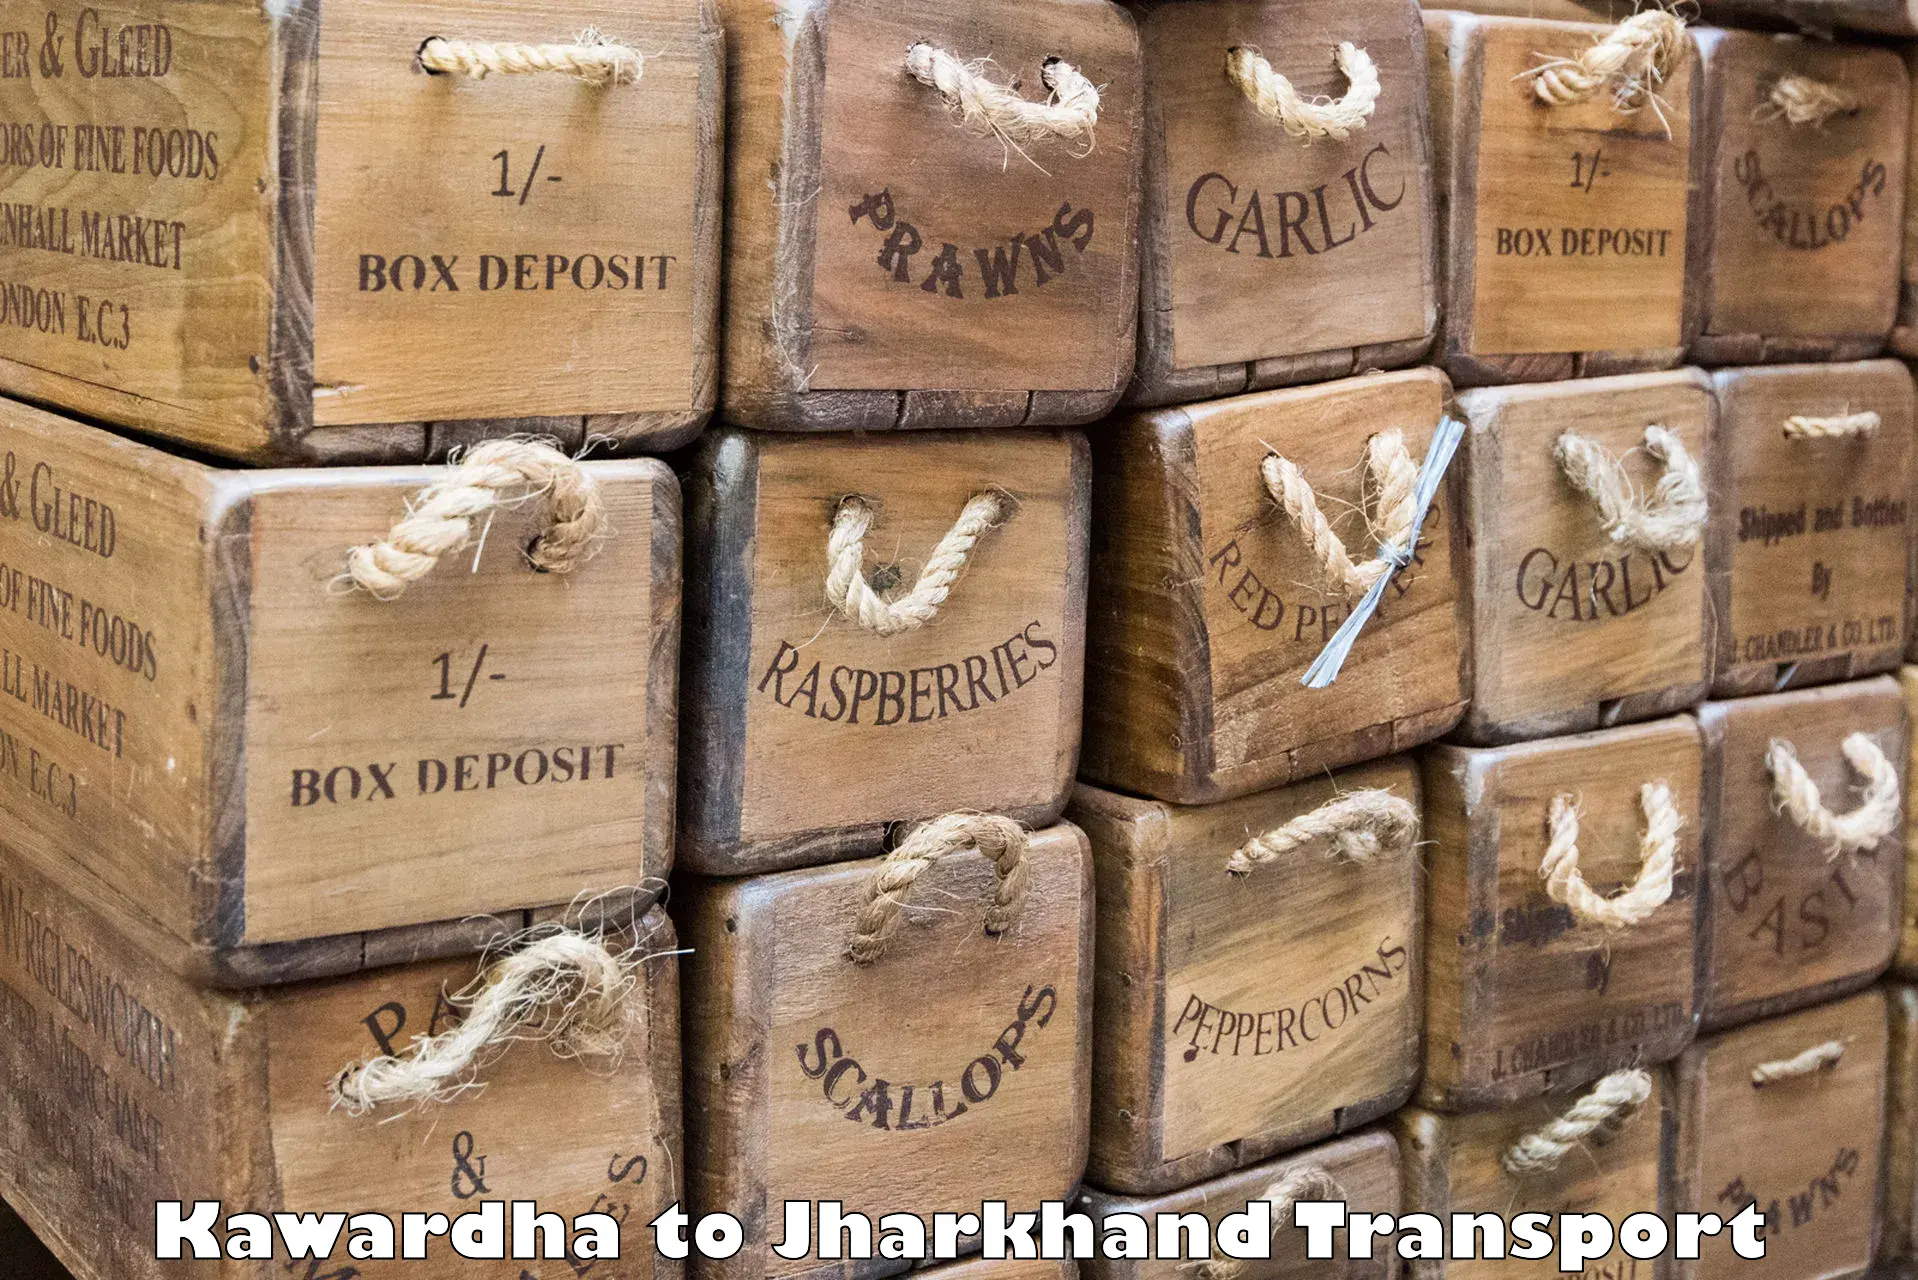 Commercial transport service Kawardha to NIT Jamshedpur